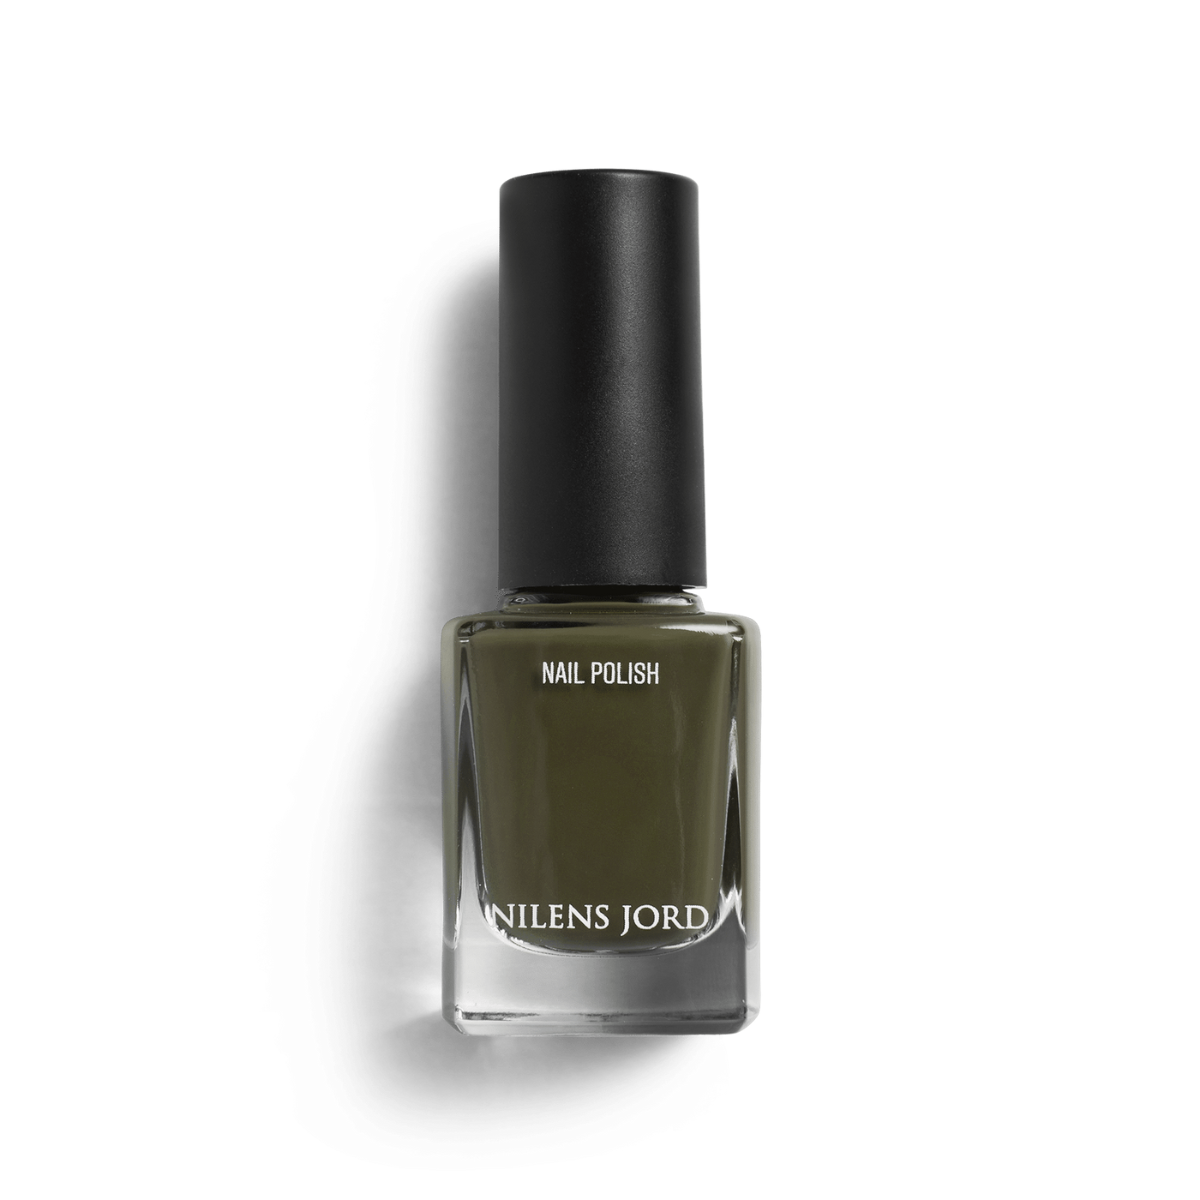 Nilens Jord - Nail Polish – Olive Green